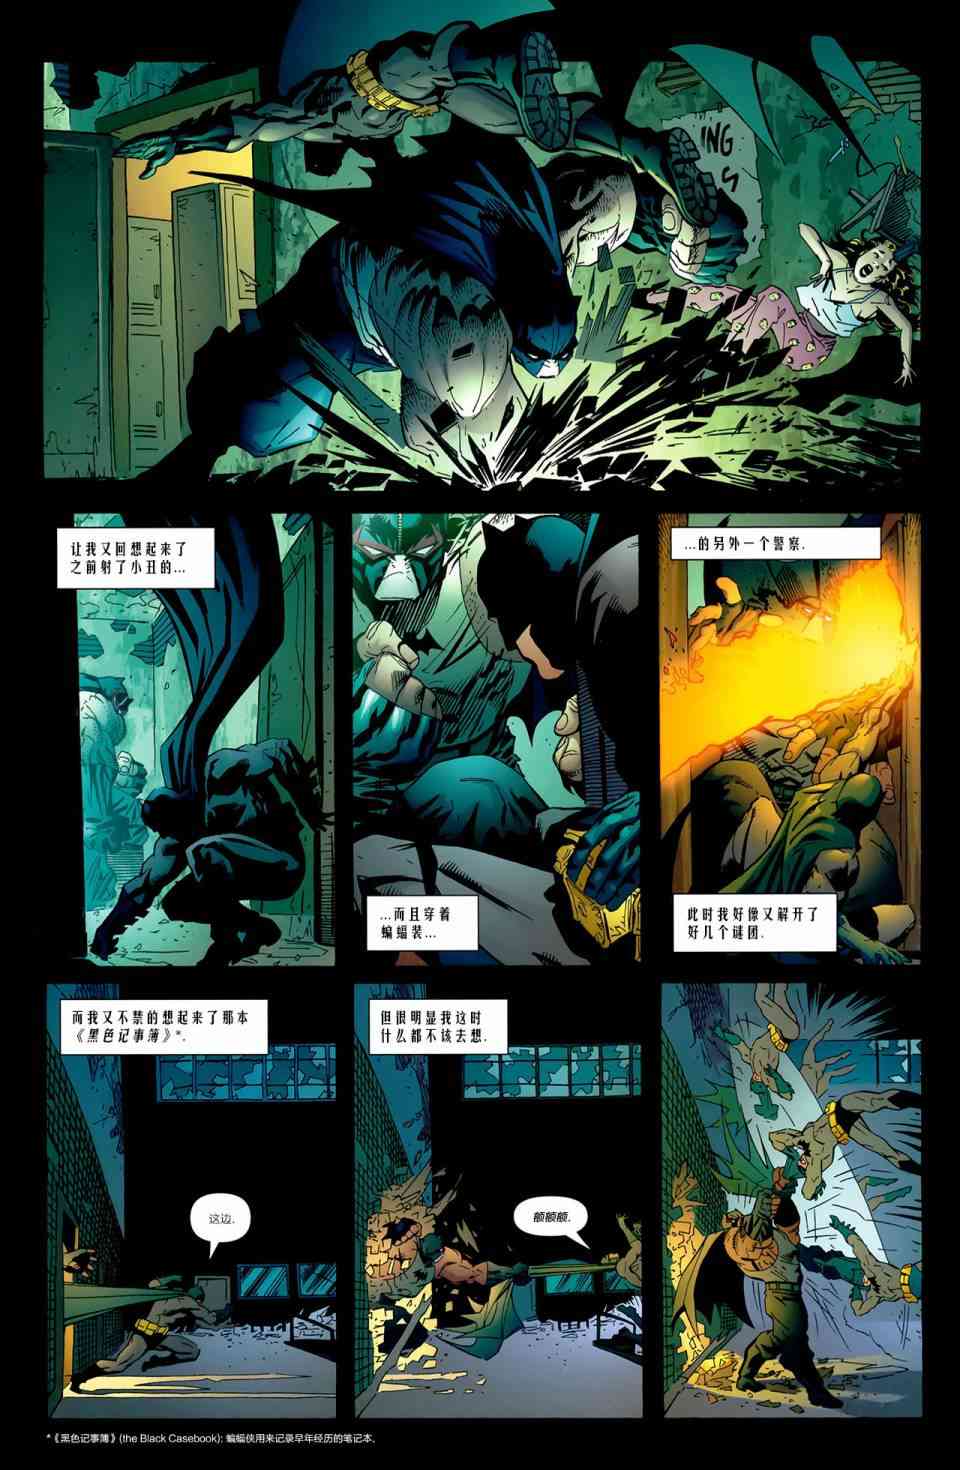 蝙蝠侠 - 第664卷蝙蝠侠与三个幽灵#1 - 4